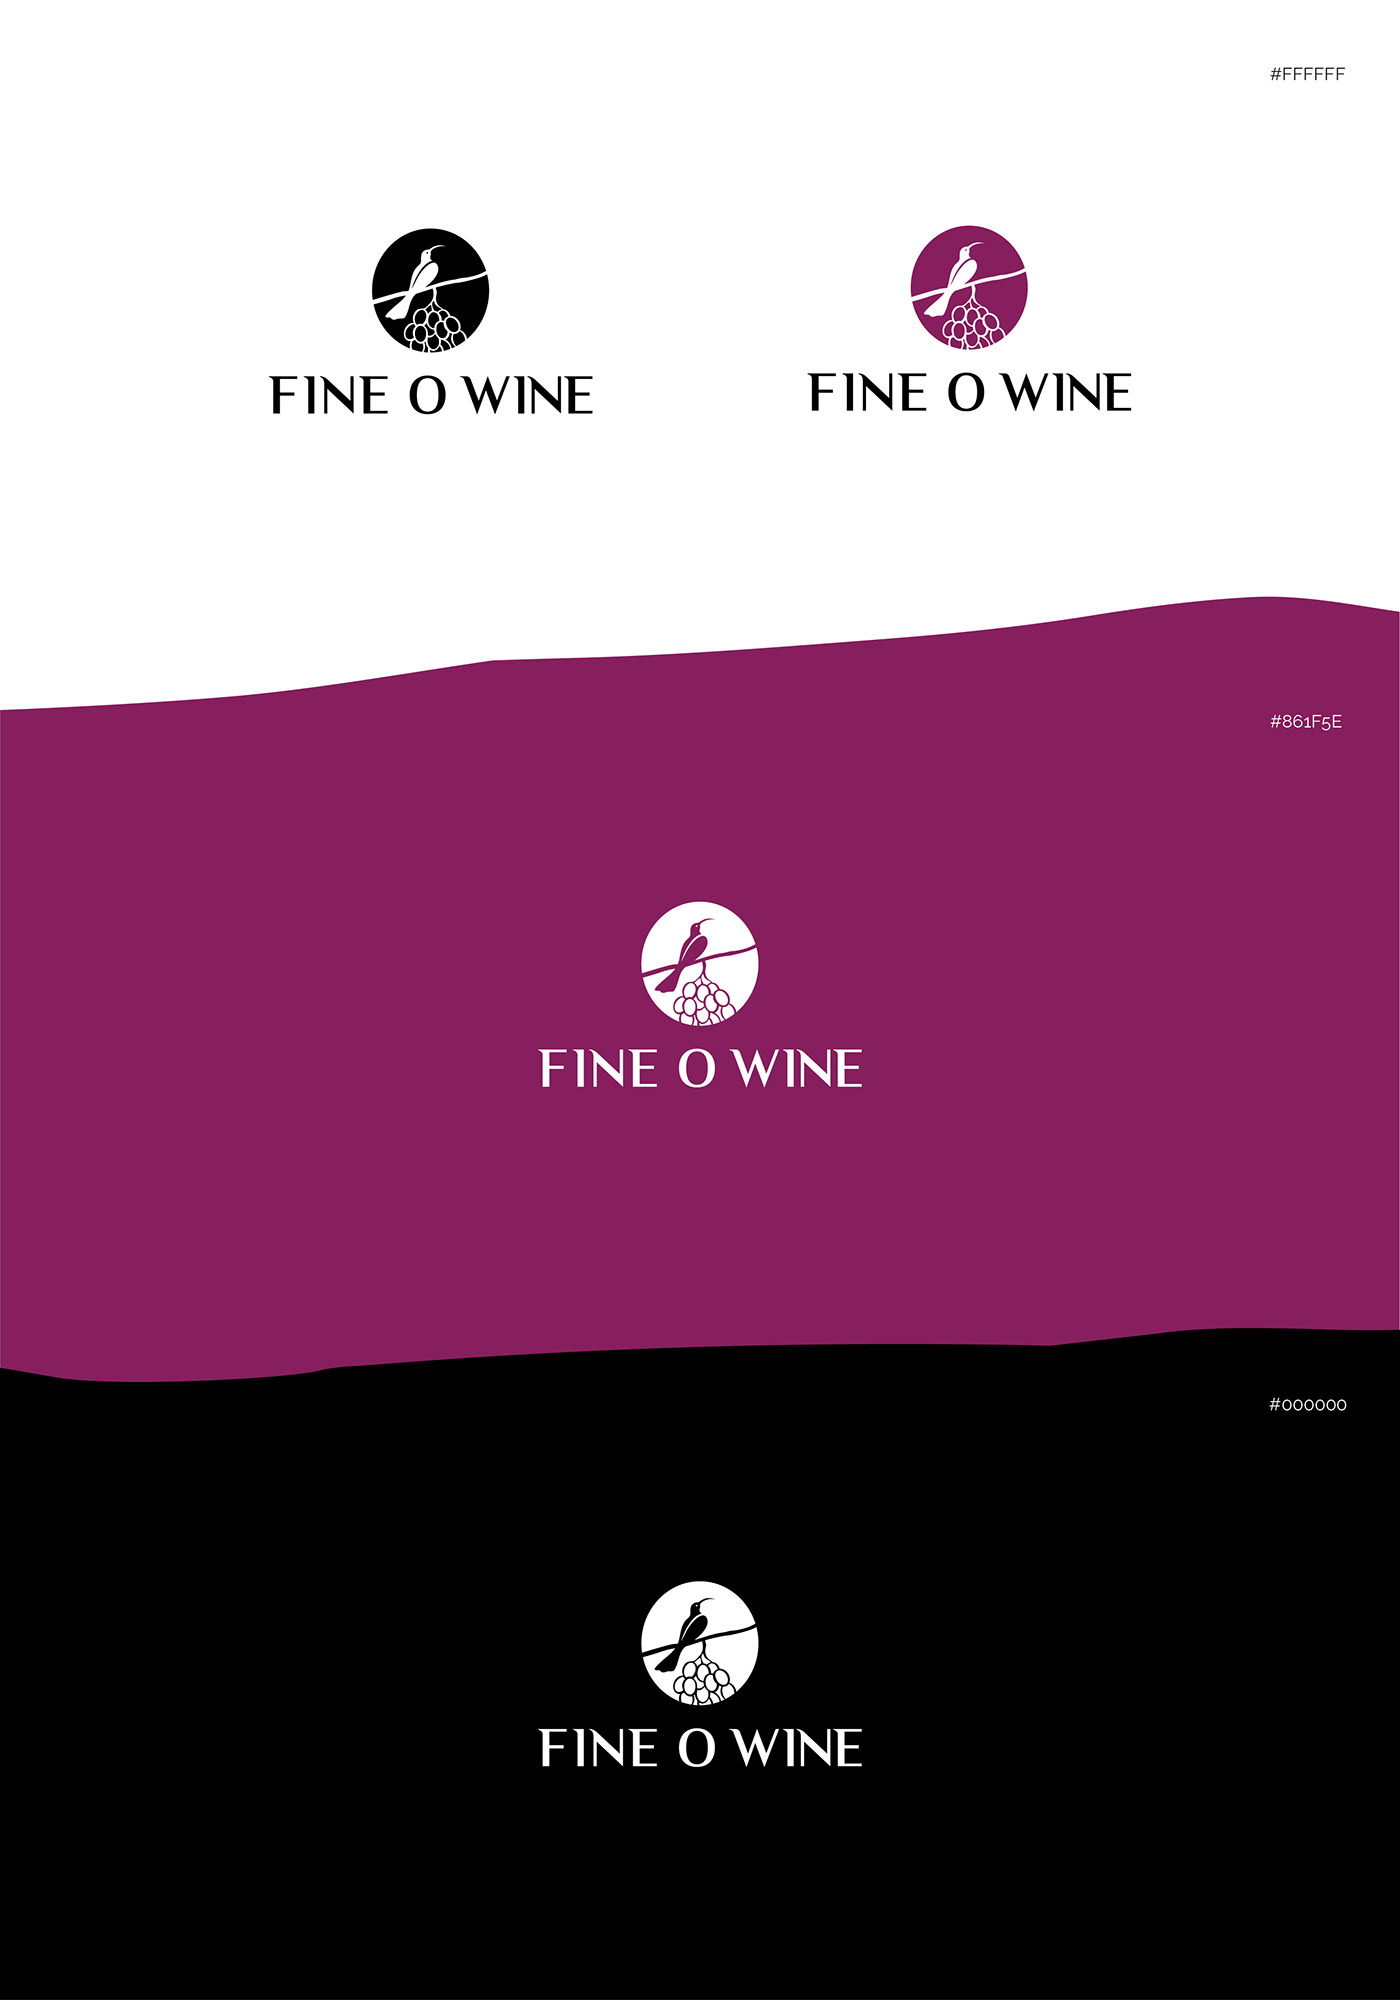 blackandwhitelogo brandidentity branding  design fineowine graphicdesign logo newzealand wineboxpackaging wineshop